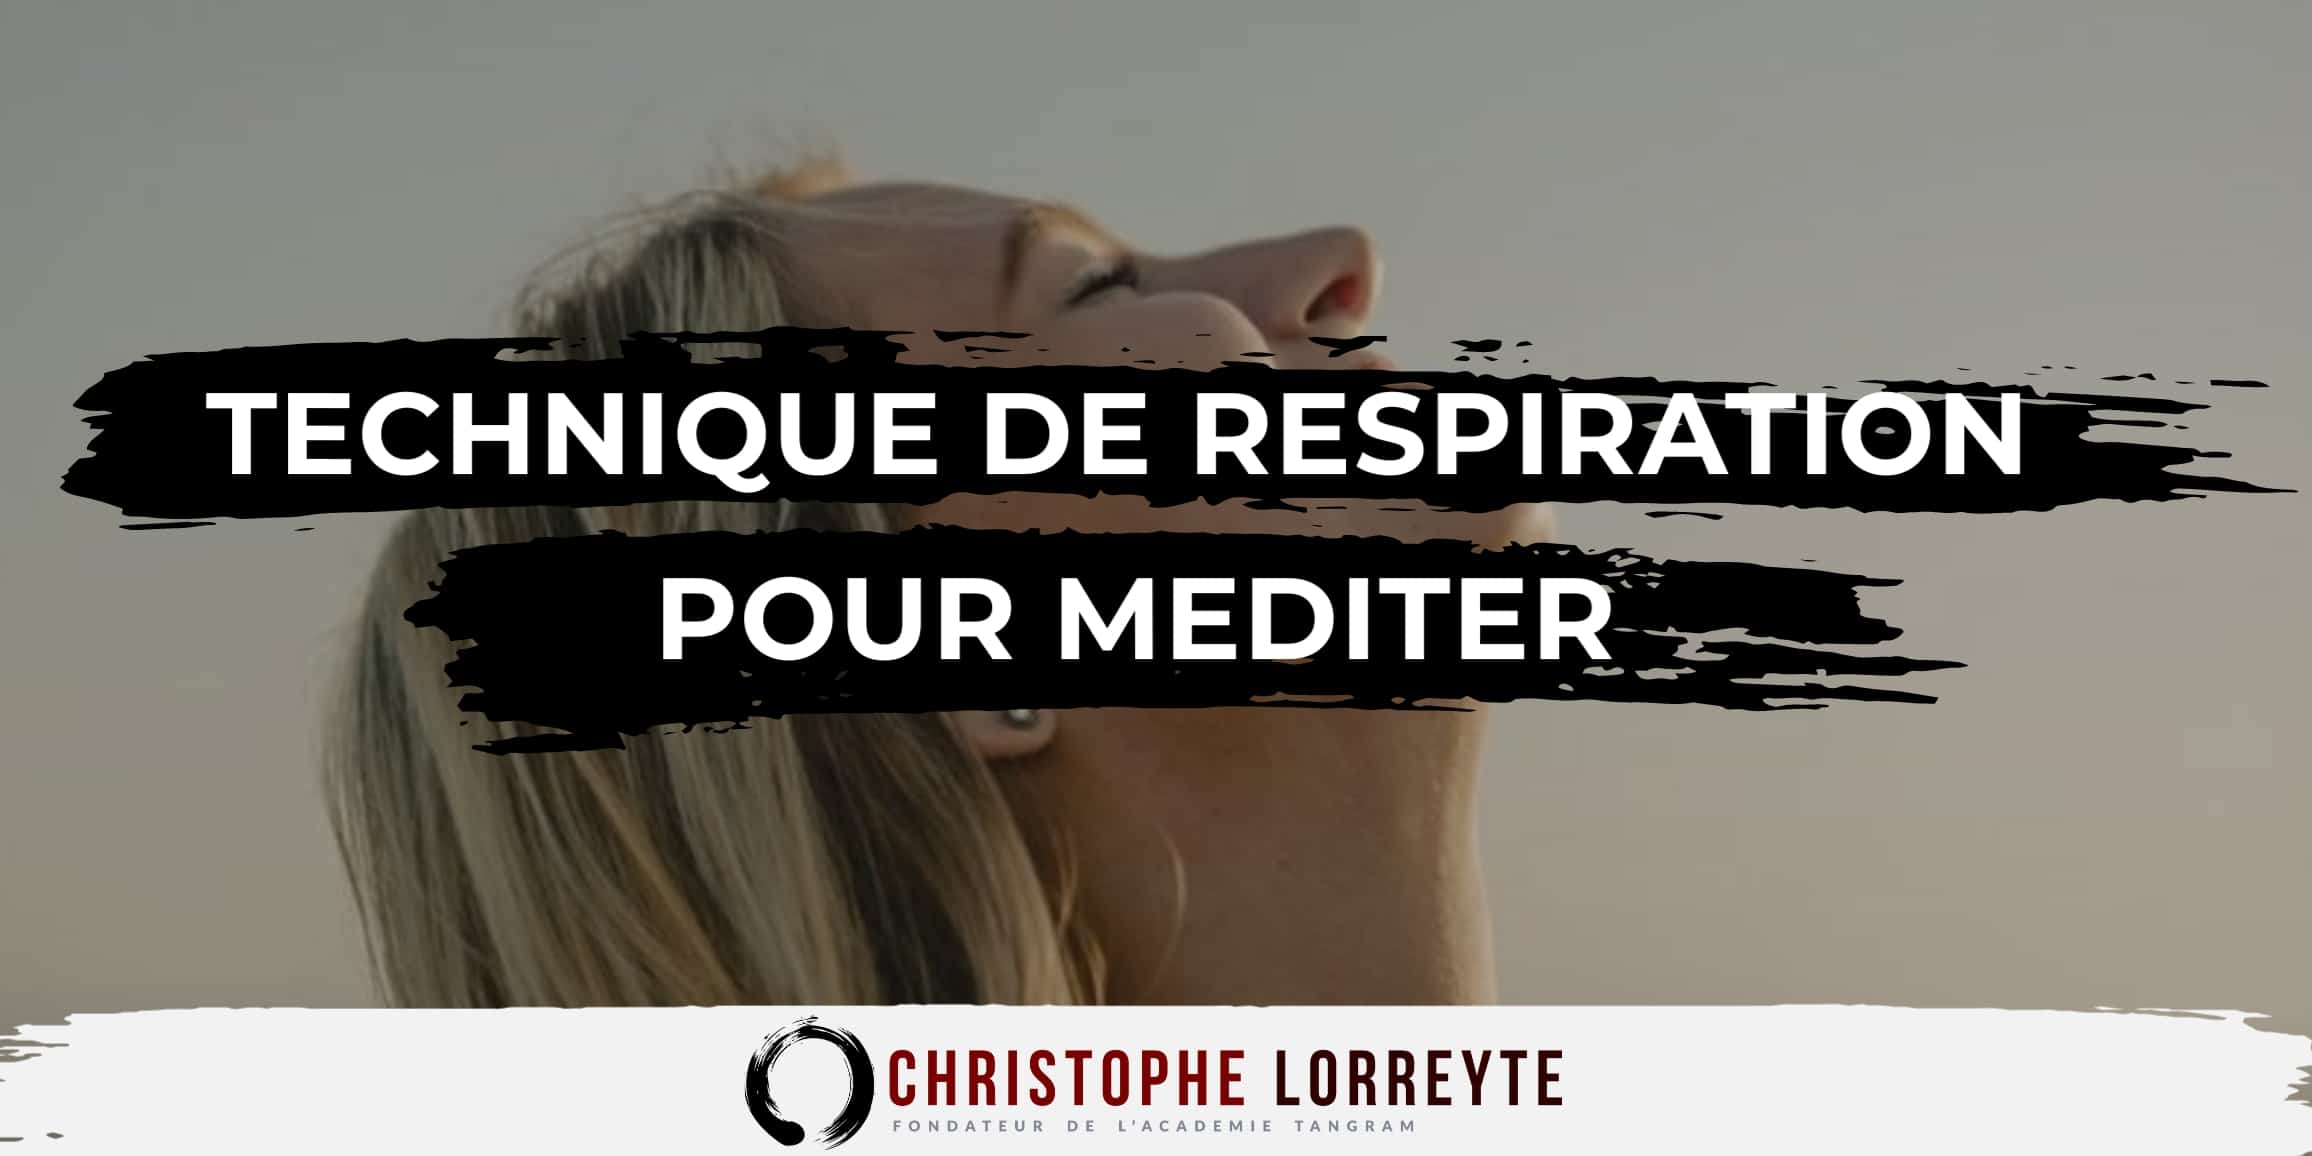 https://christophe-lorreyte.fr/wp-content/uploads/2018/03/Couverture-Technique-de-respiration-pour-mediter.jpg